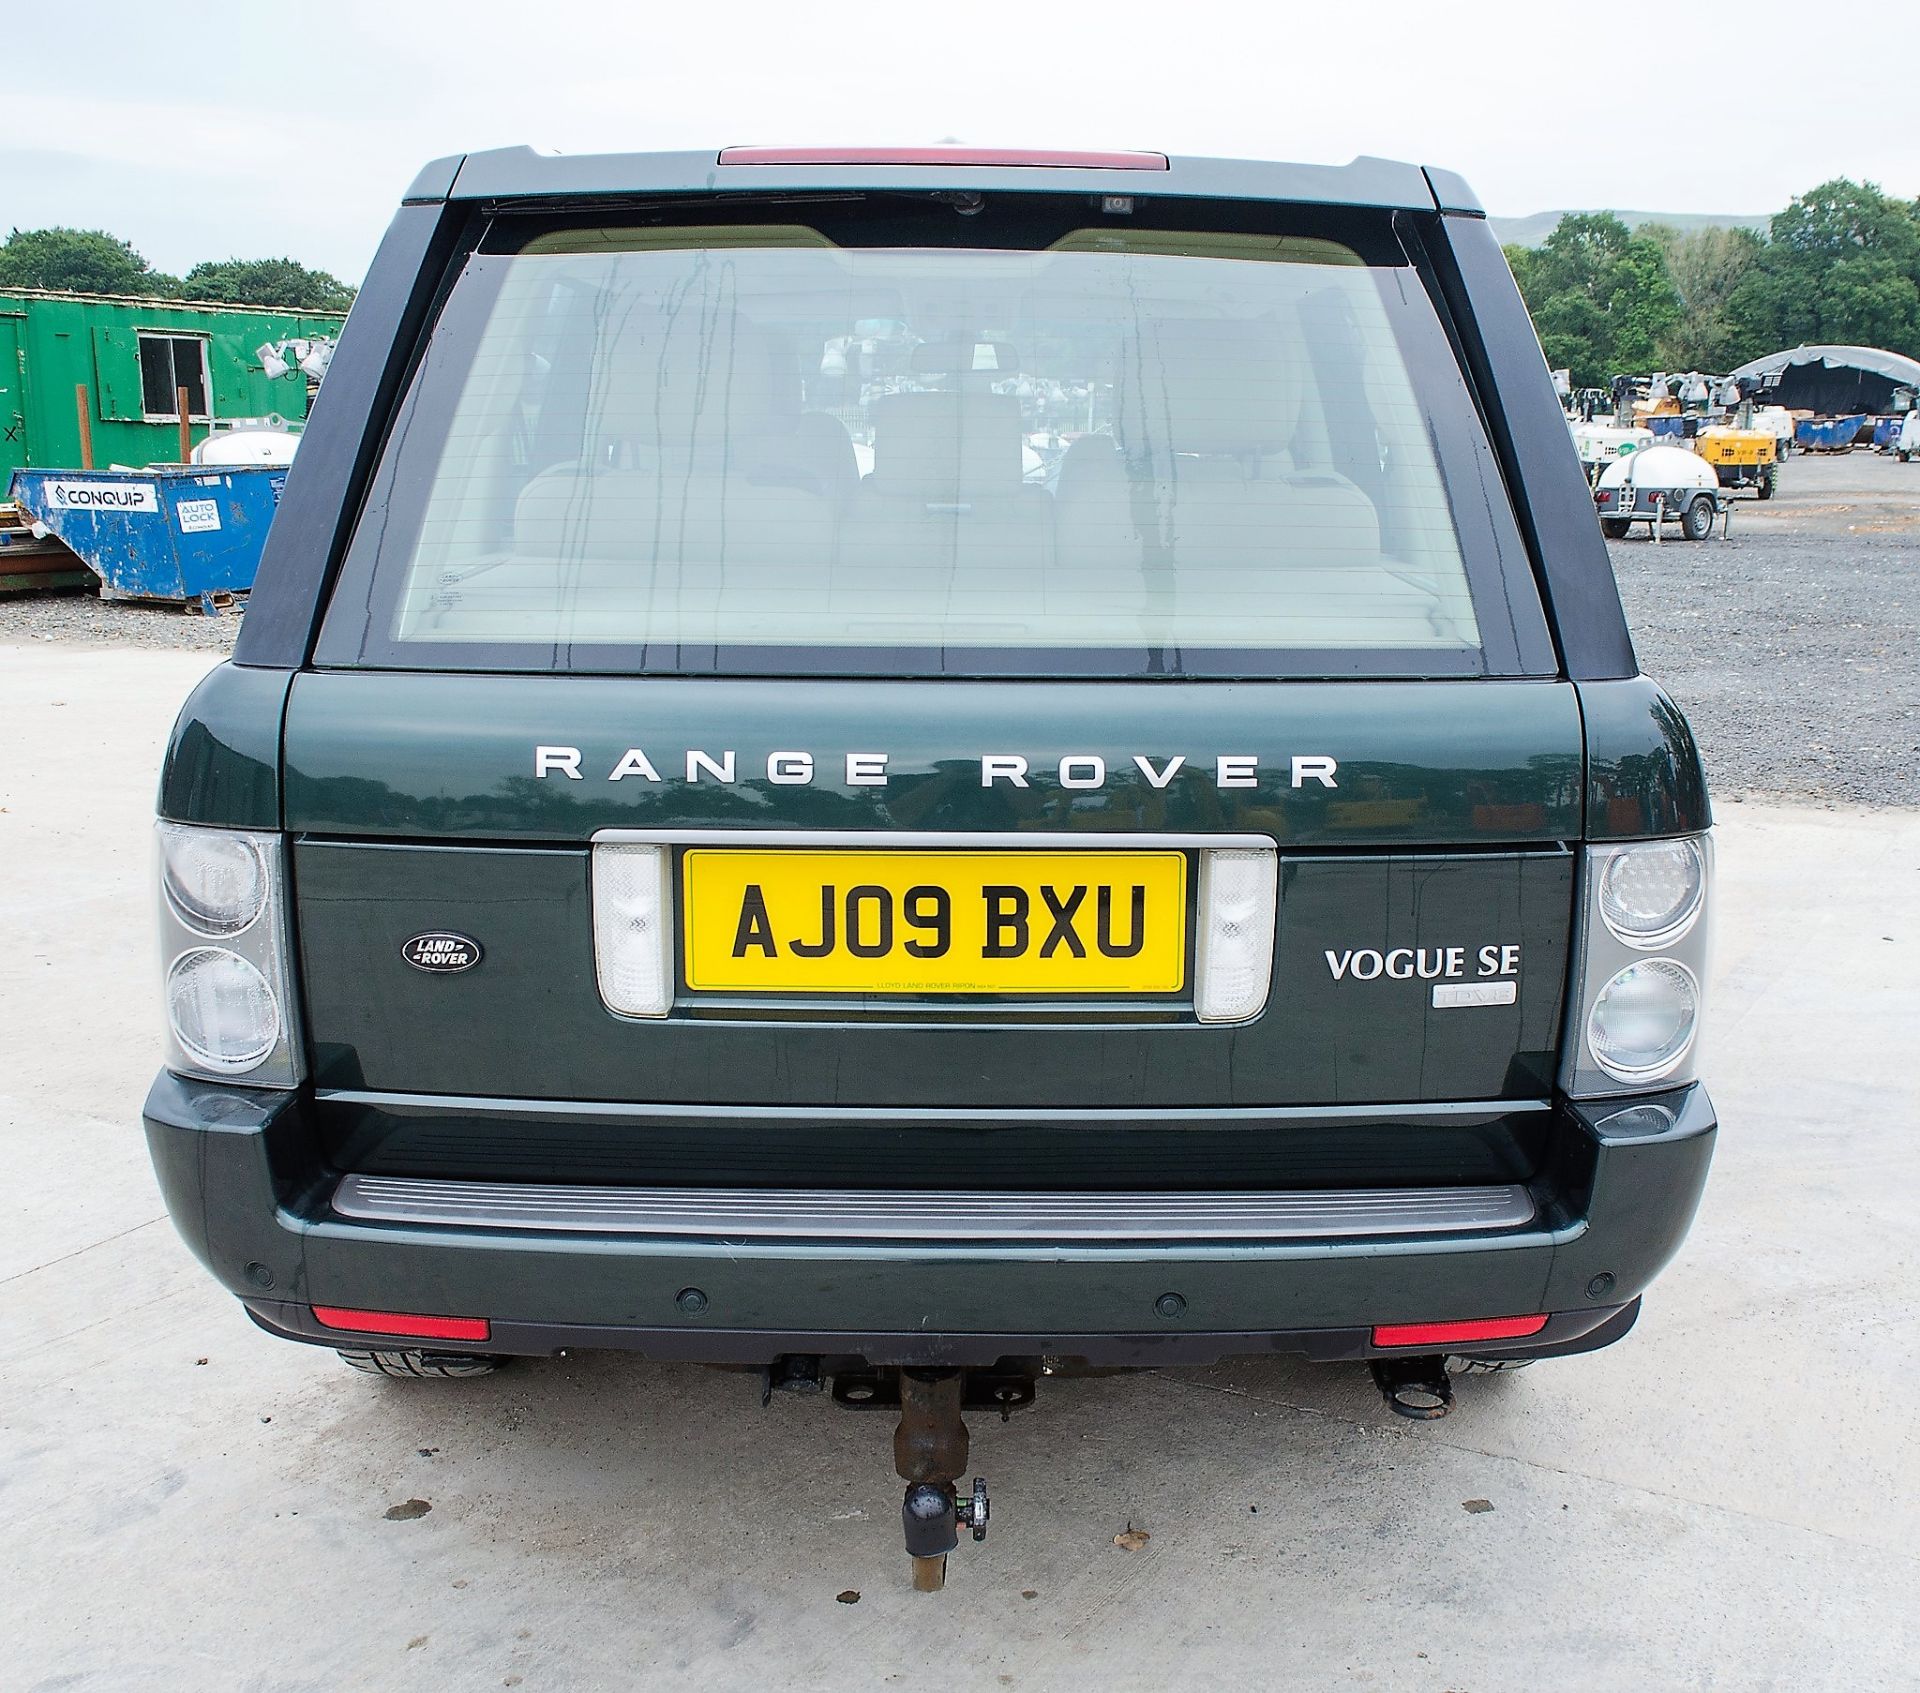 Range Rover Vogue SE TDV8 3.6 diesel 5 door 4wd estate car Registration Number: AJ09 BXU Date of - Image 6 of 33